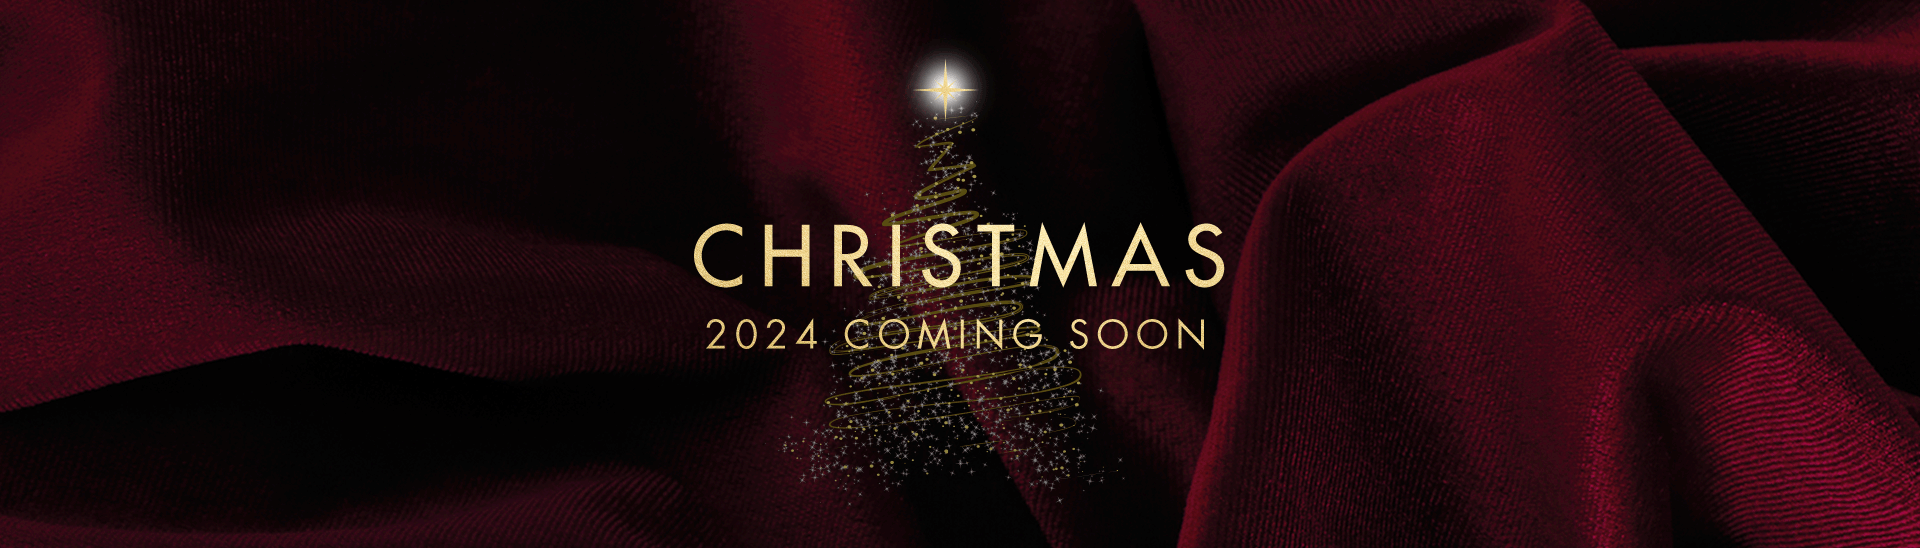 Christmas 2024 at Woodford Green